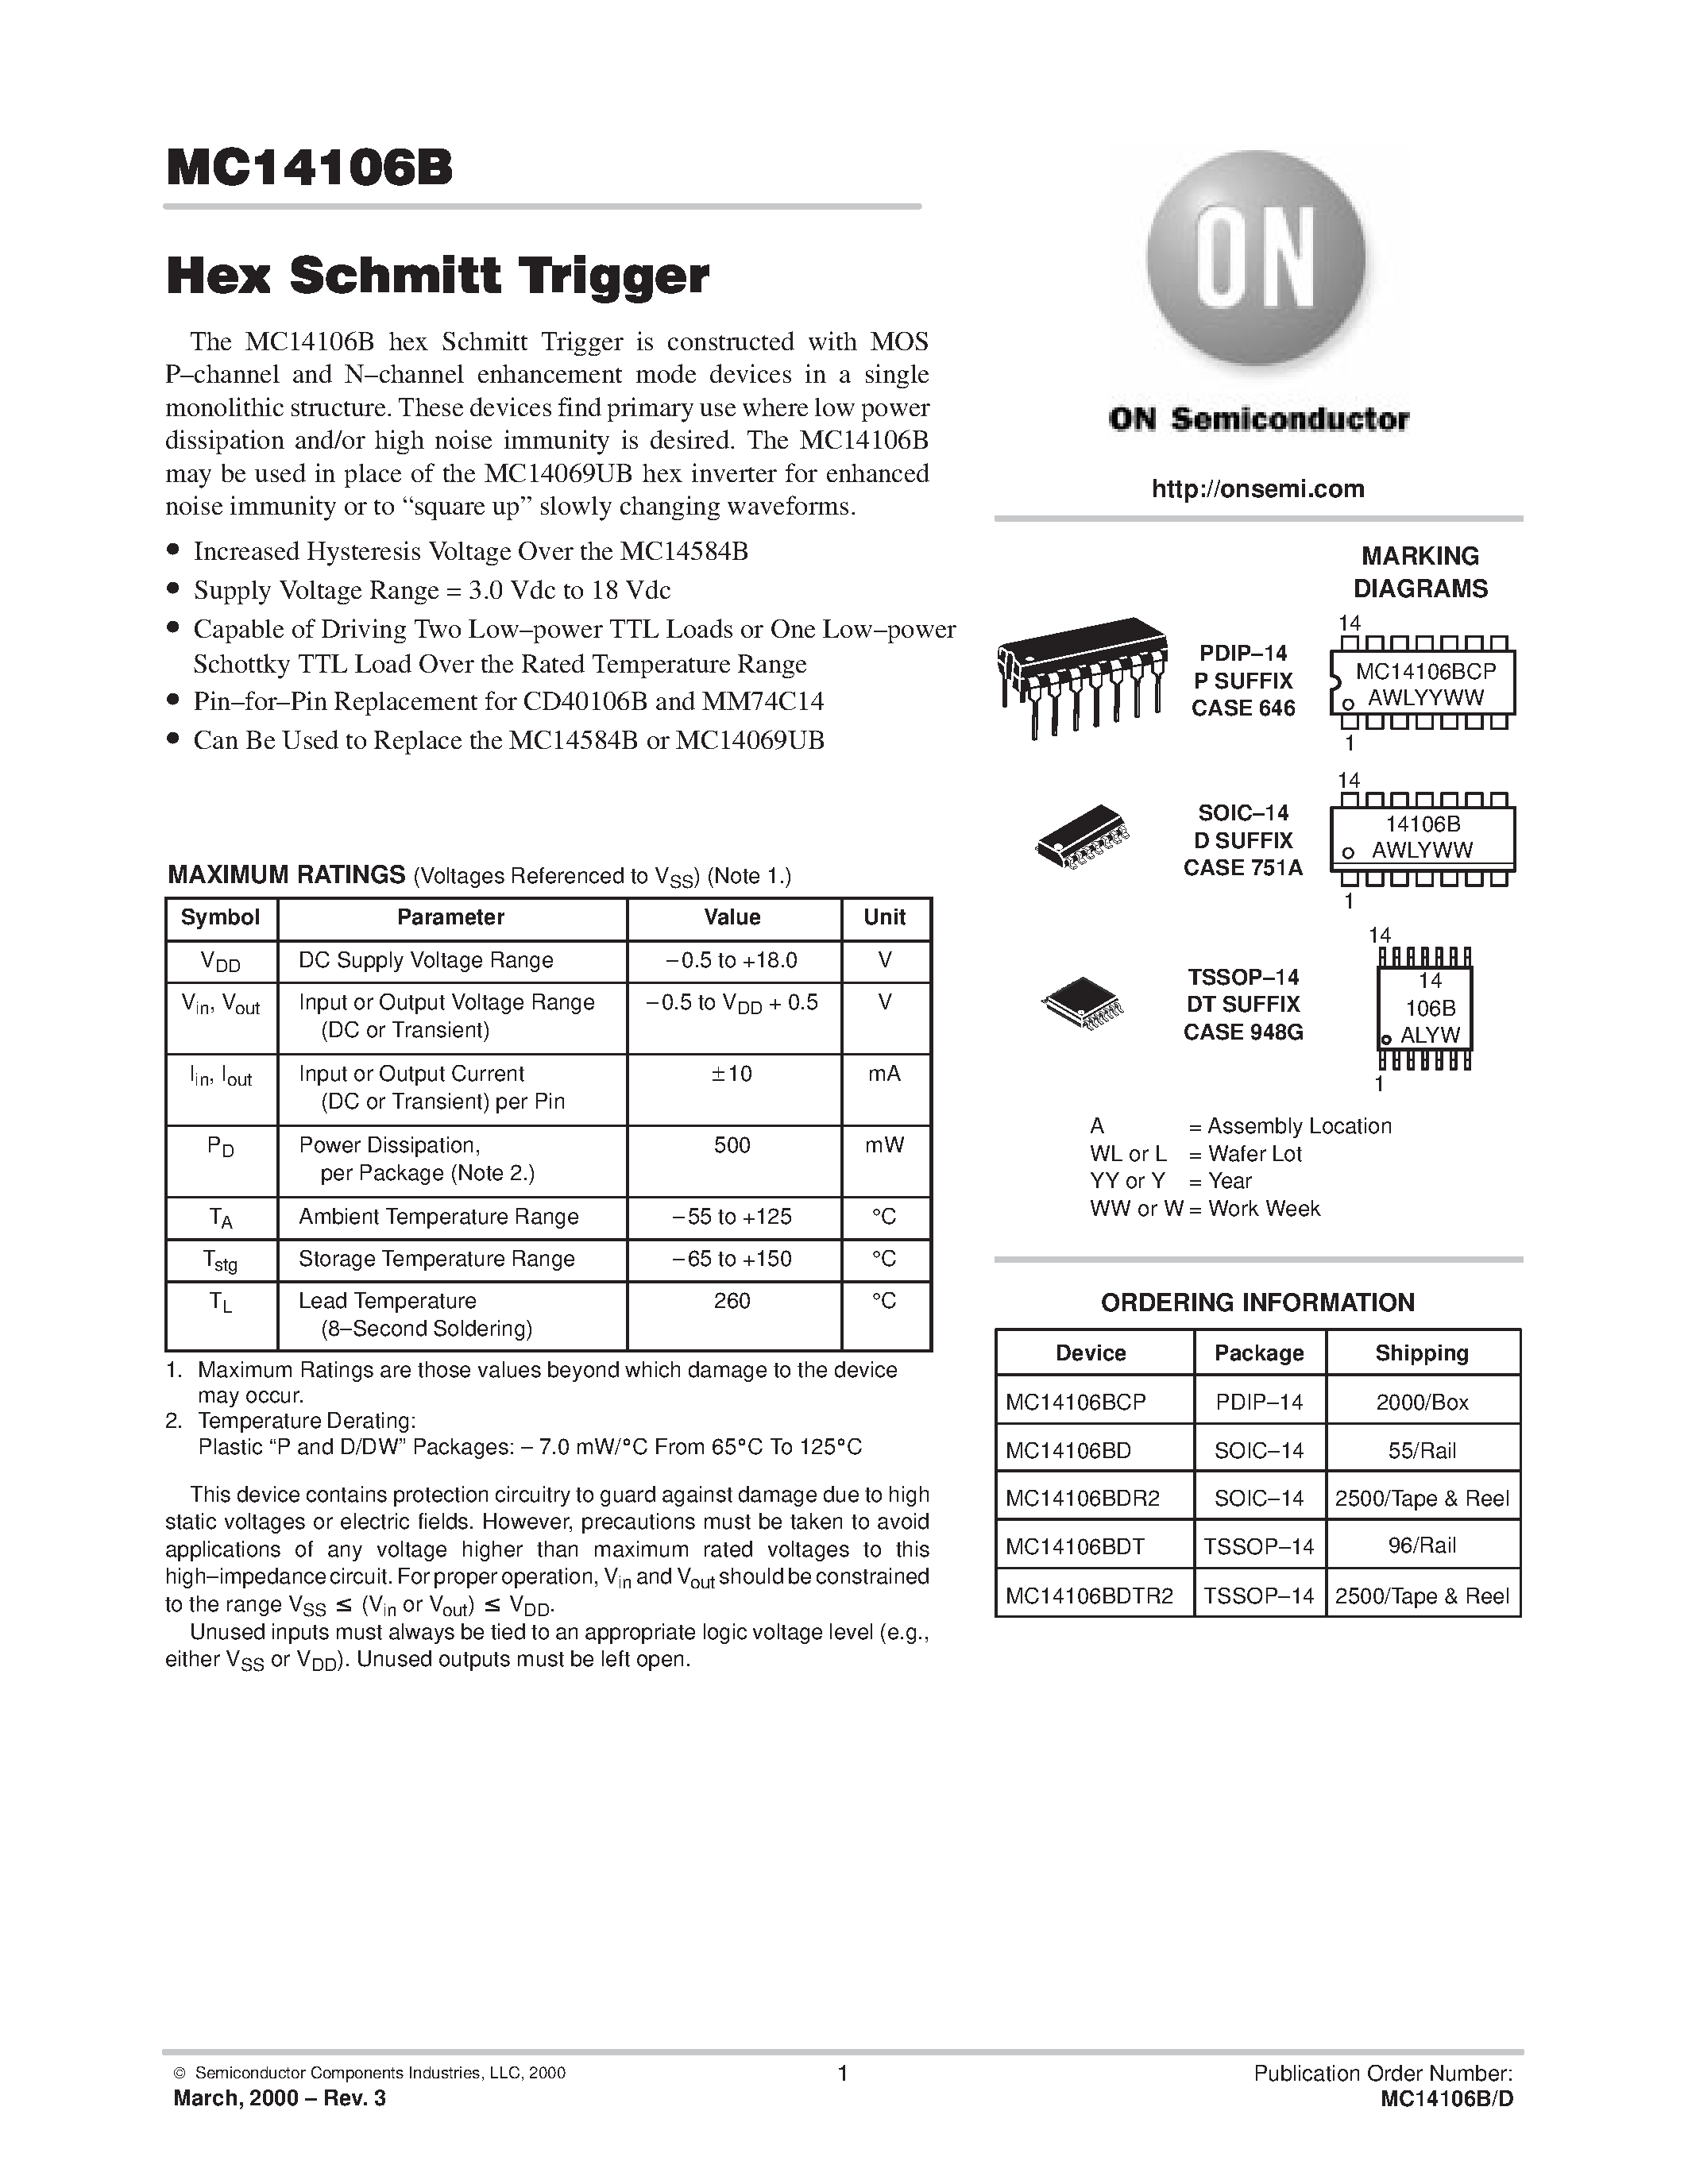 Datasheet MC14106BDT - Hex Schmitt Trigger page 1